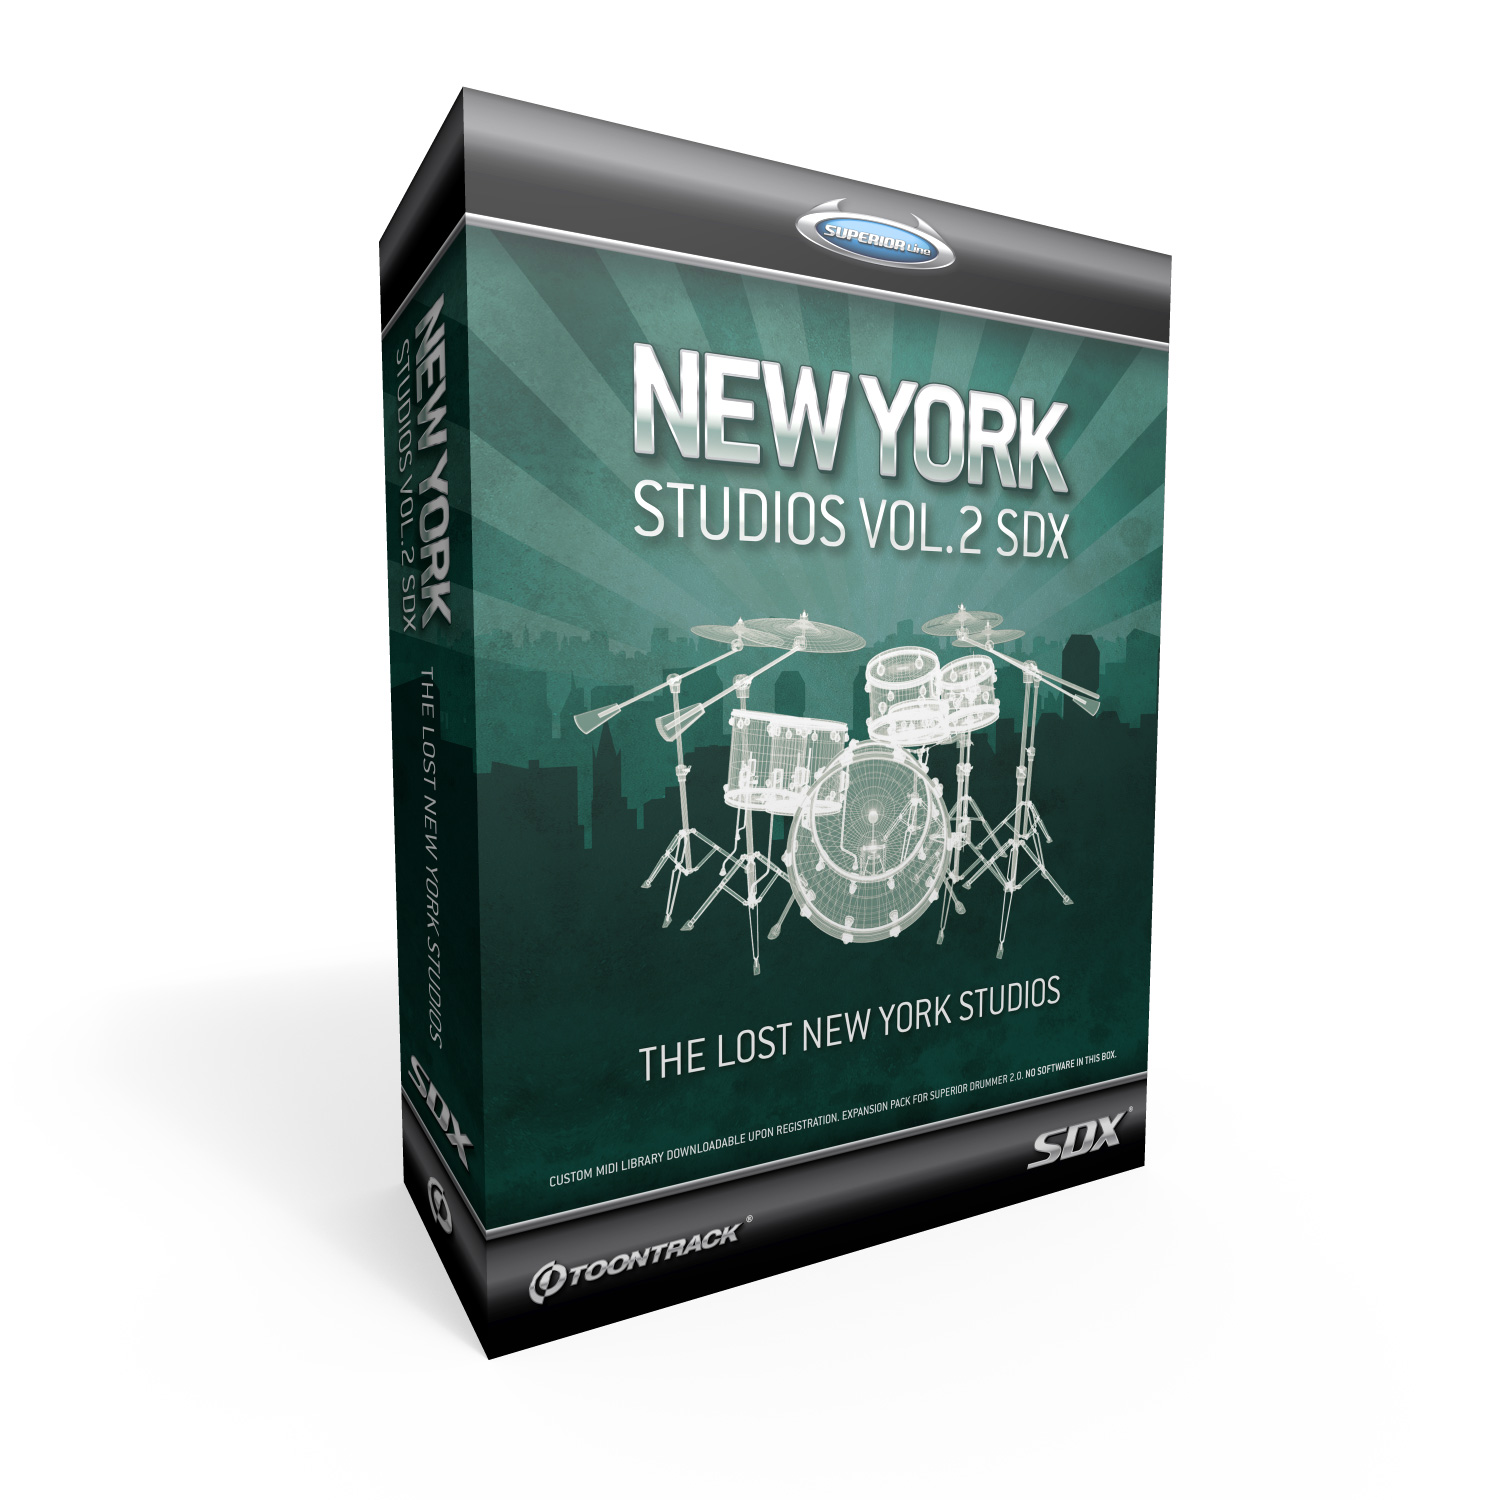 New York Studio Vol.2 SDX SD Erweiterung